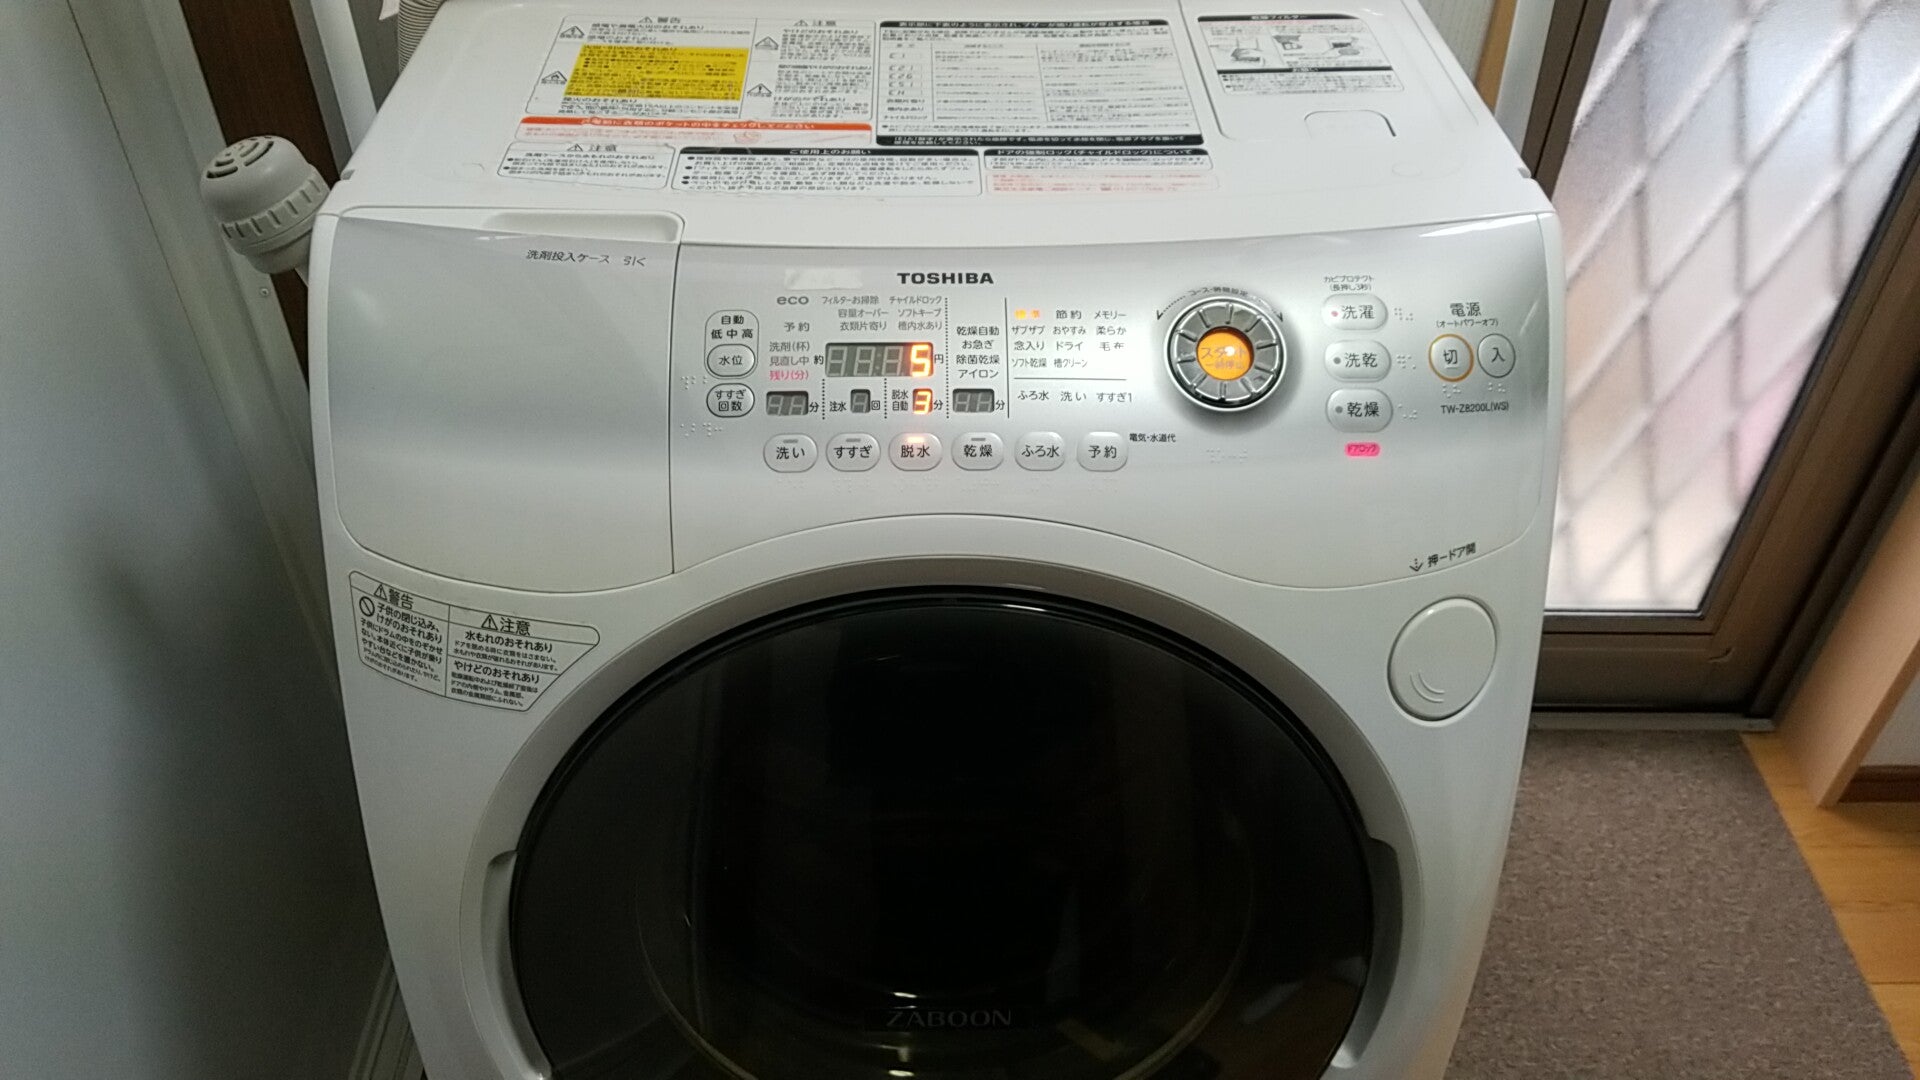 愛知県弥富市 東芝製ドラム式洗濯乾燥機 排水しない不具合修理 | 便利屋 修助サポートのブログ